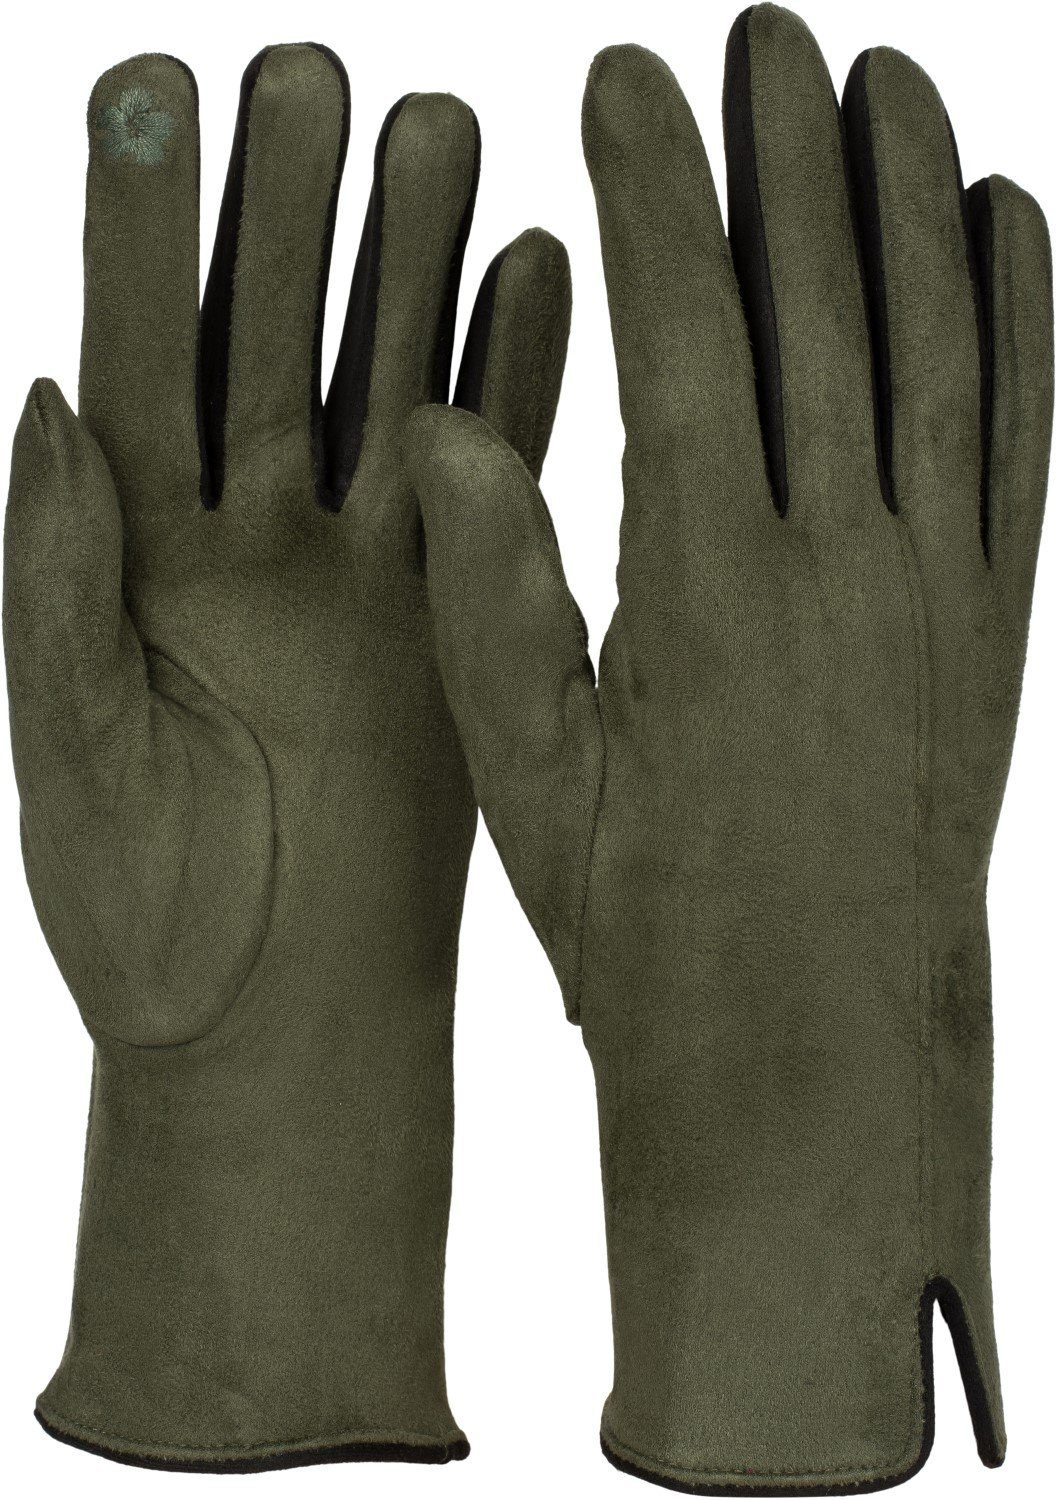 styleBREAKER Fleecehandschuhe Touchscreen Handschuhe Kontrast online kaufen  | OTTO